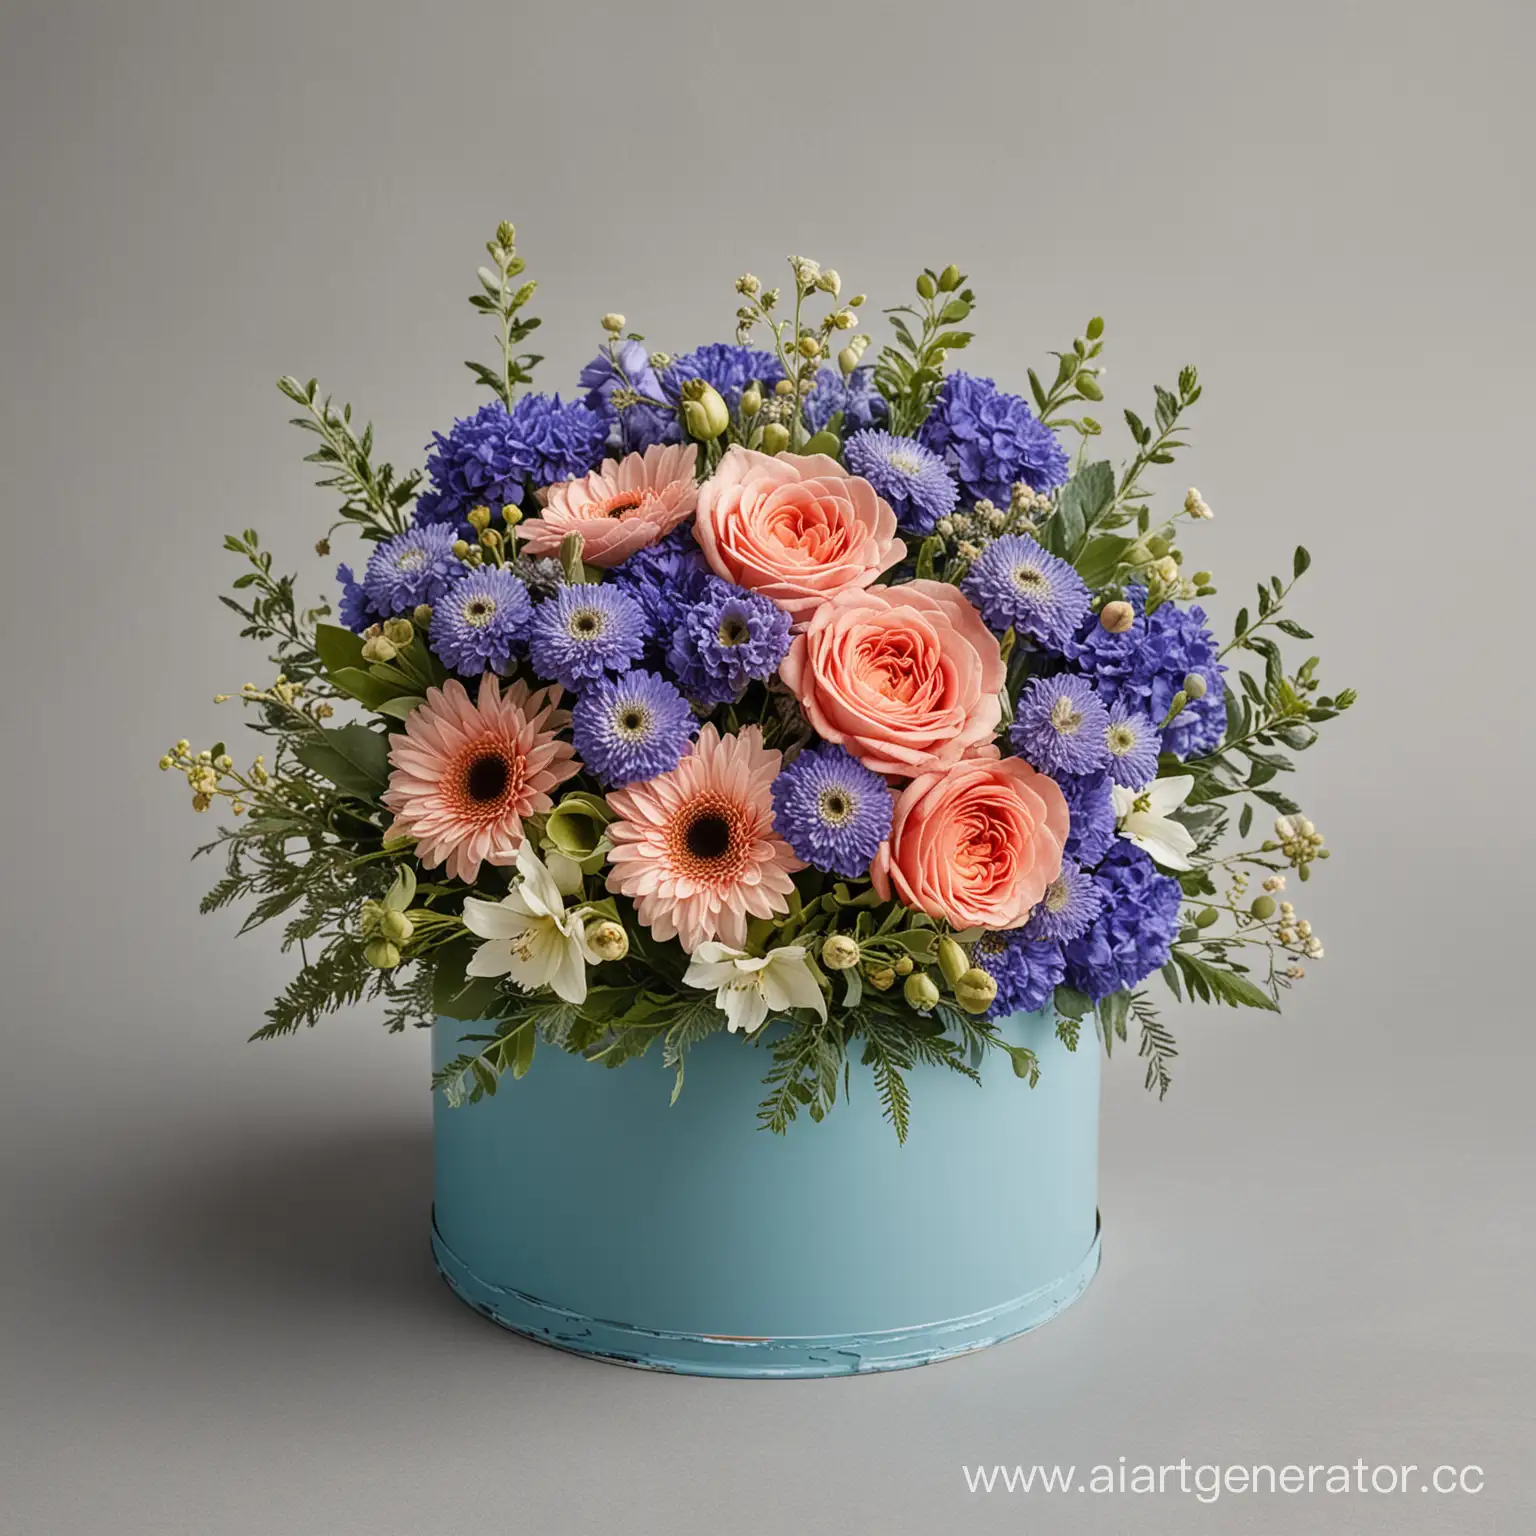 букет цветов в круглой коробке голубого цвета, на нейтральном сером фоне